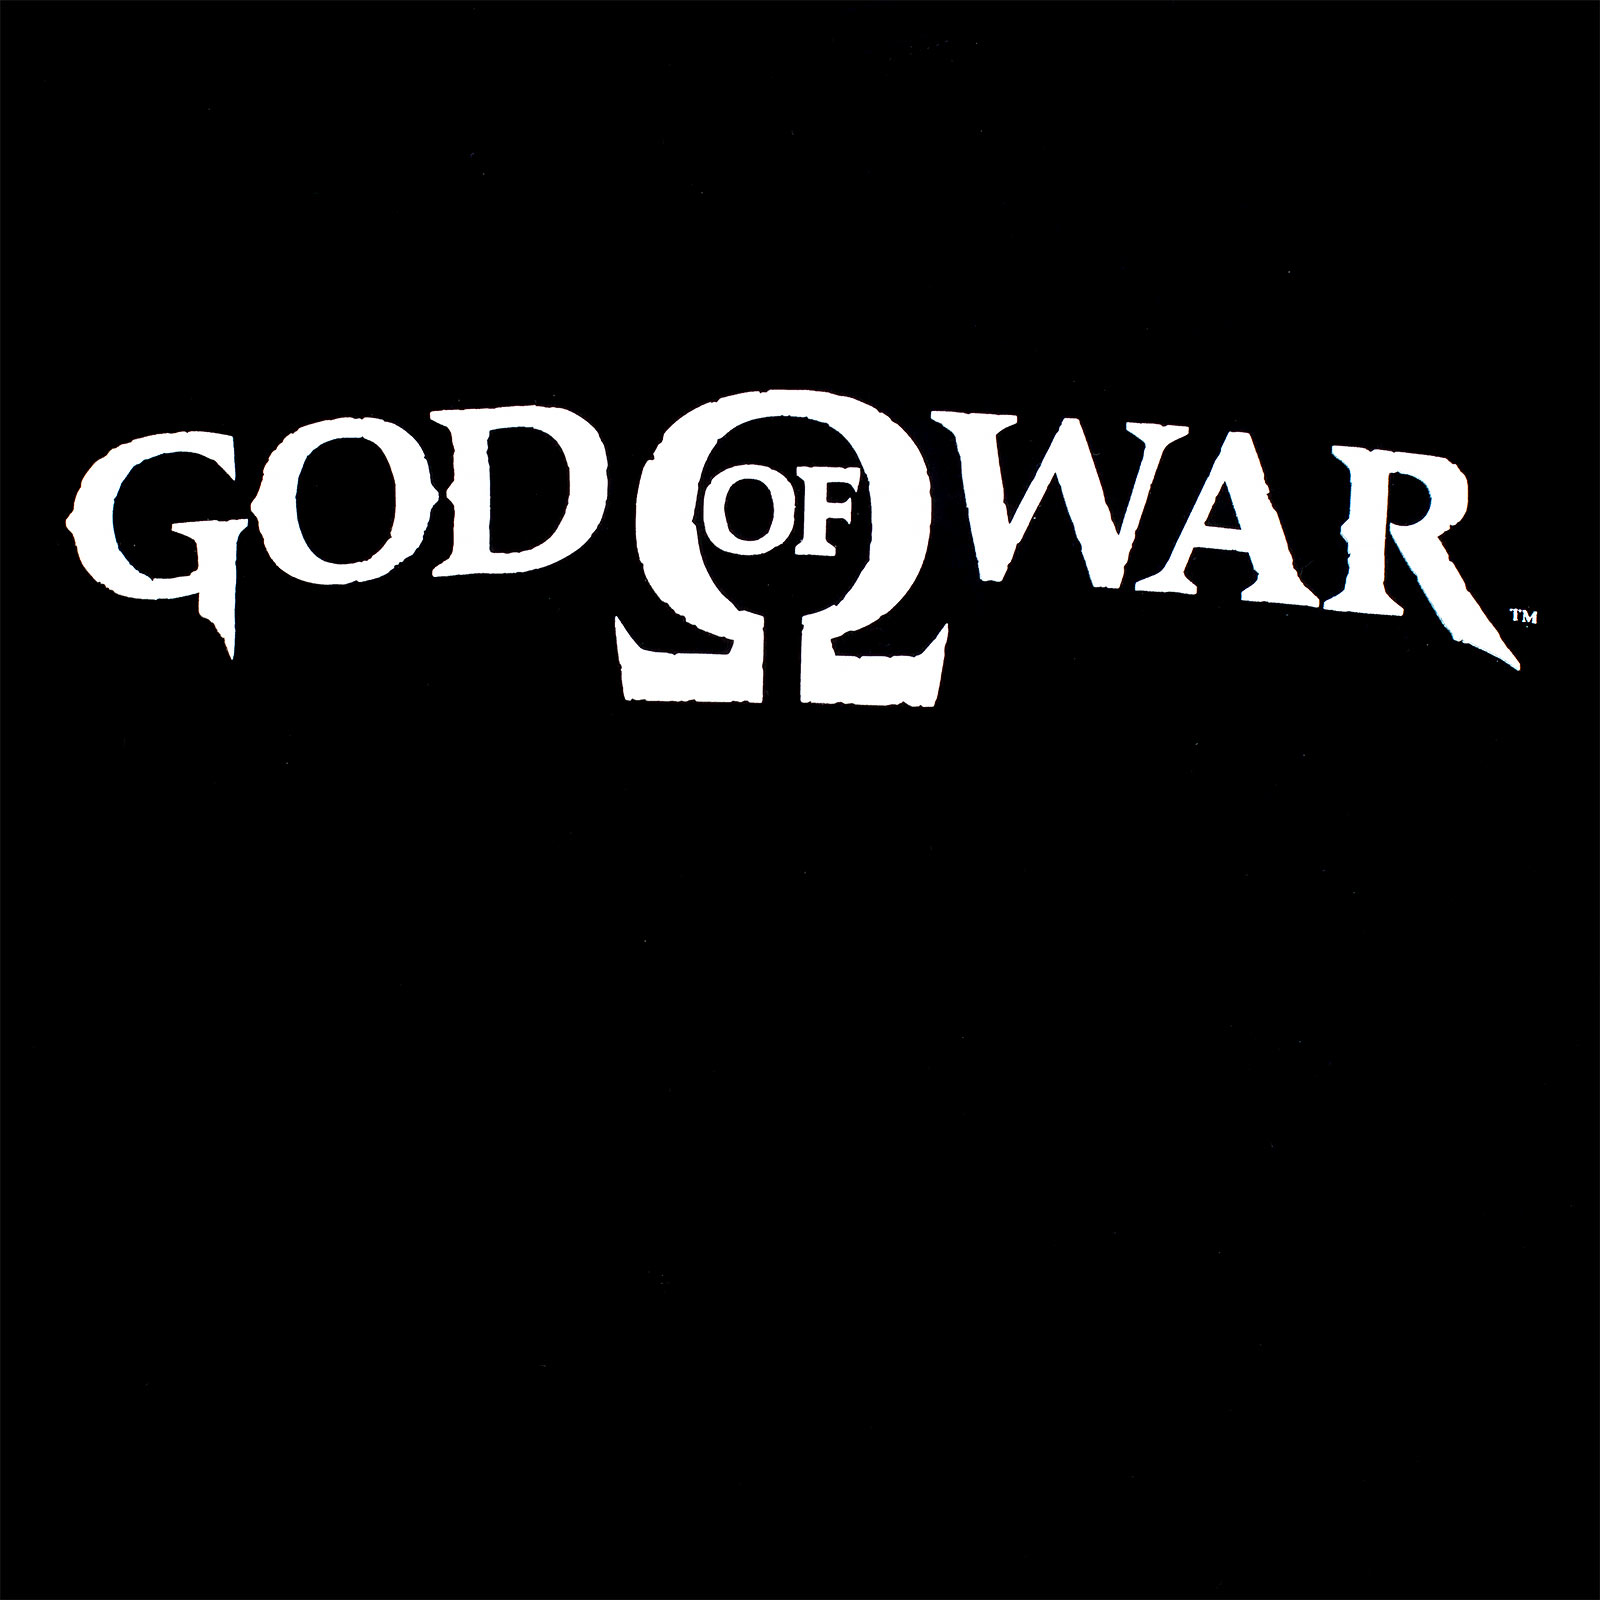 God of War - Logo T-Shirt schwarz